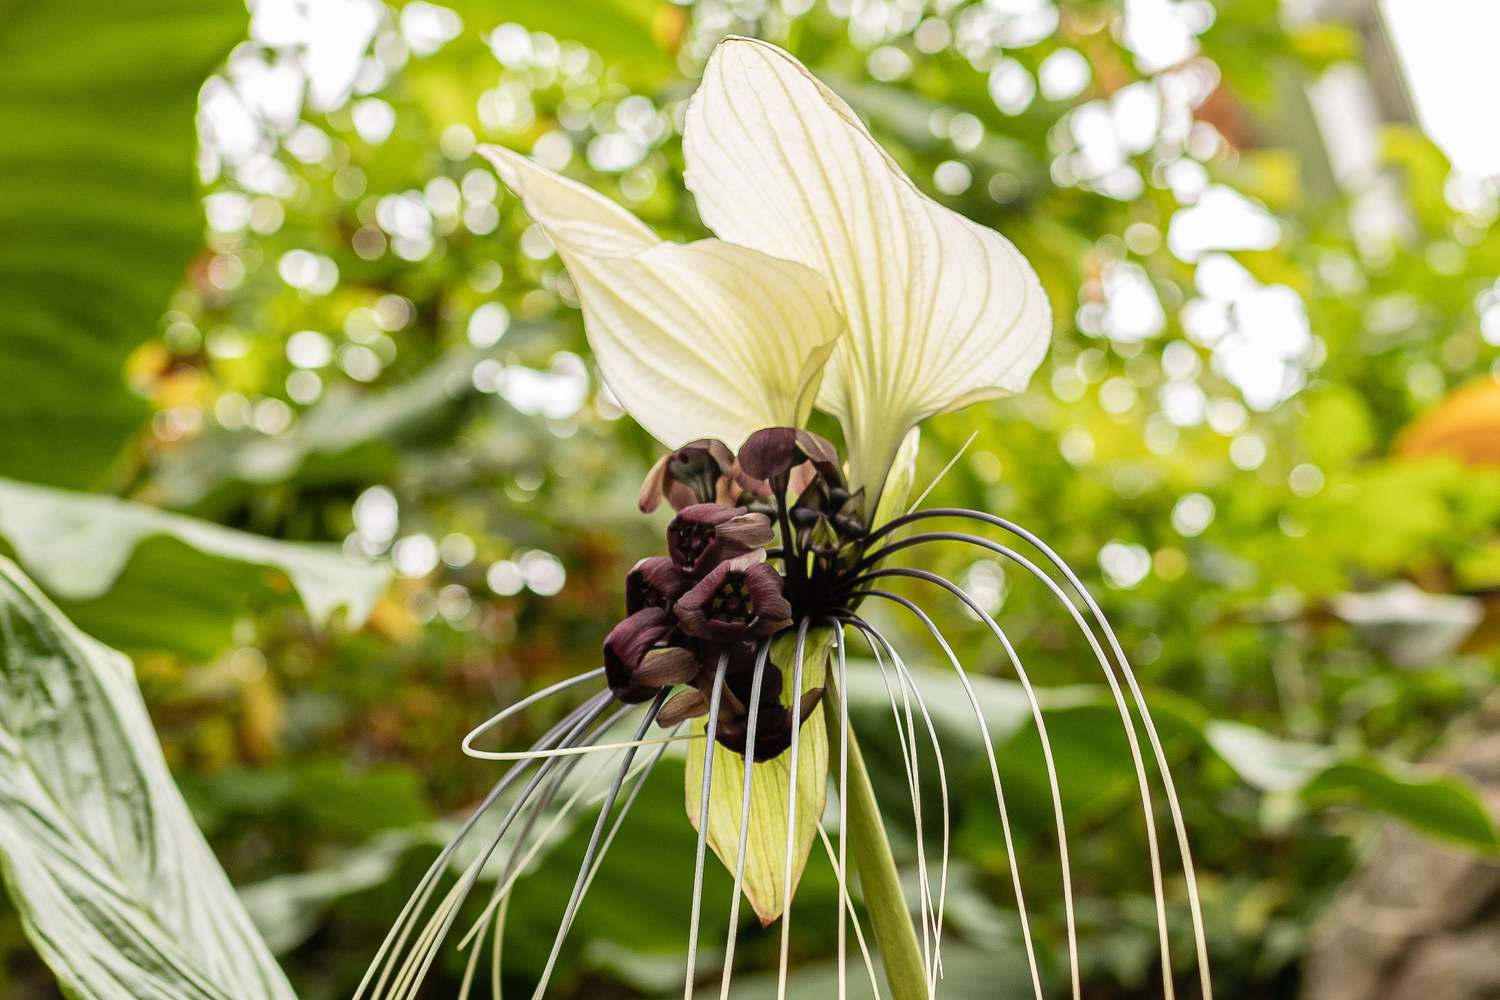 Weiße Fledermausblume mit zwei ausladenden weißen Hüllblättern und violetten Blüten über langen, schnurrbartartigen Hüllblättern